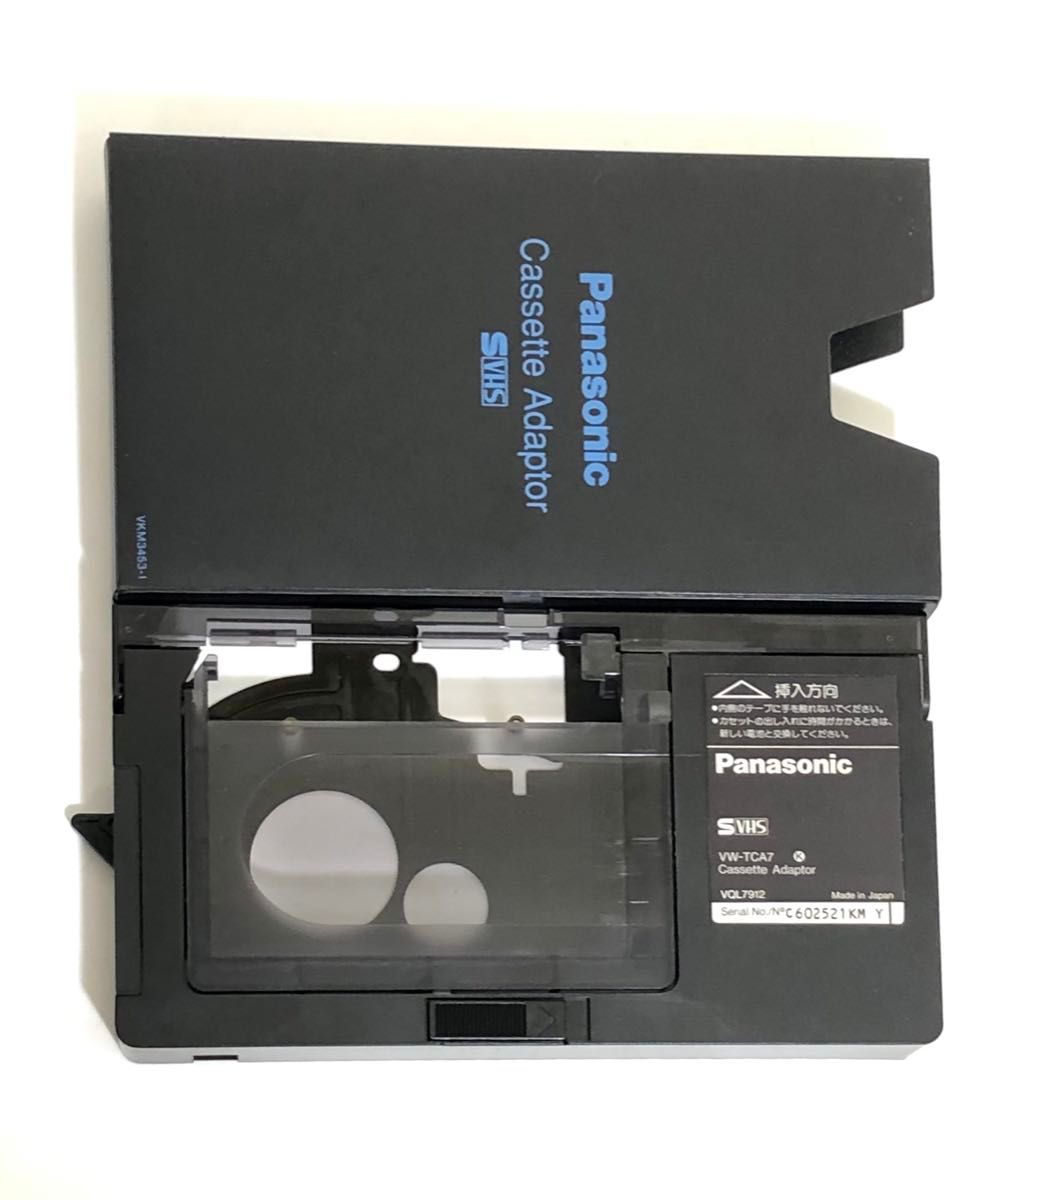 ケース入り【 Panasonic/パナソニック カセットアダプタ《VW-TCA7》S-VHS】Cassette Adaptor